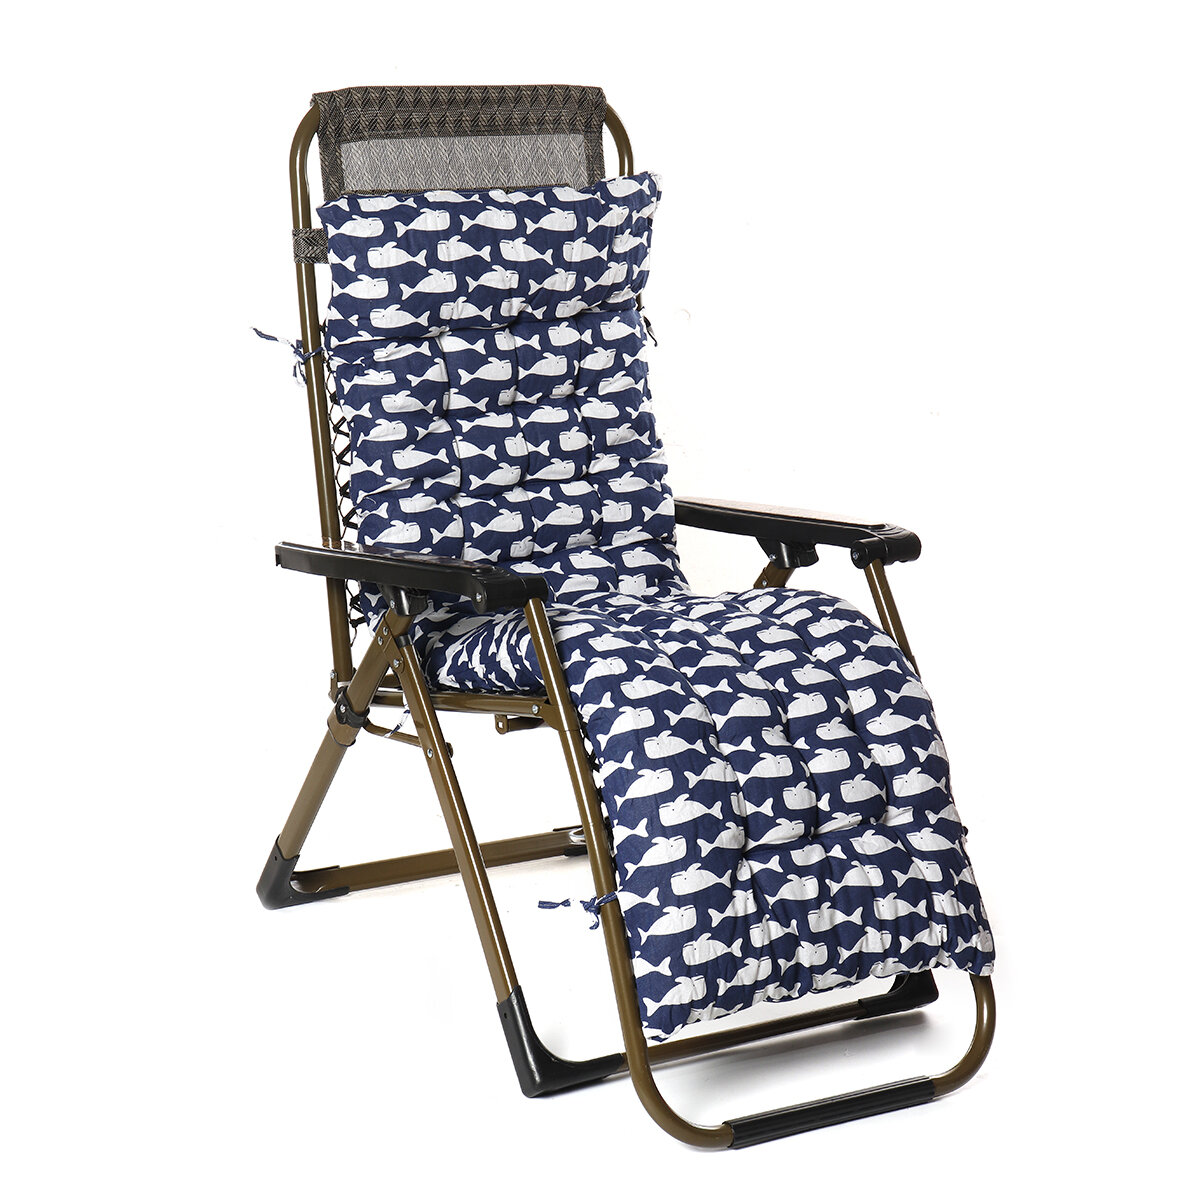 

Recliner Chair Cushion High Back Lounger Chair Seat Cushion Bench Soft Backrest Pad Waist Support Pillow Mat Home Office